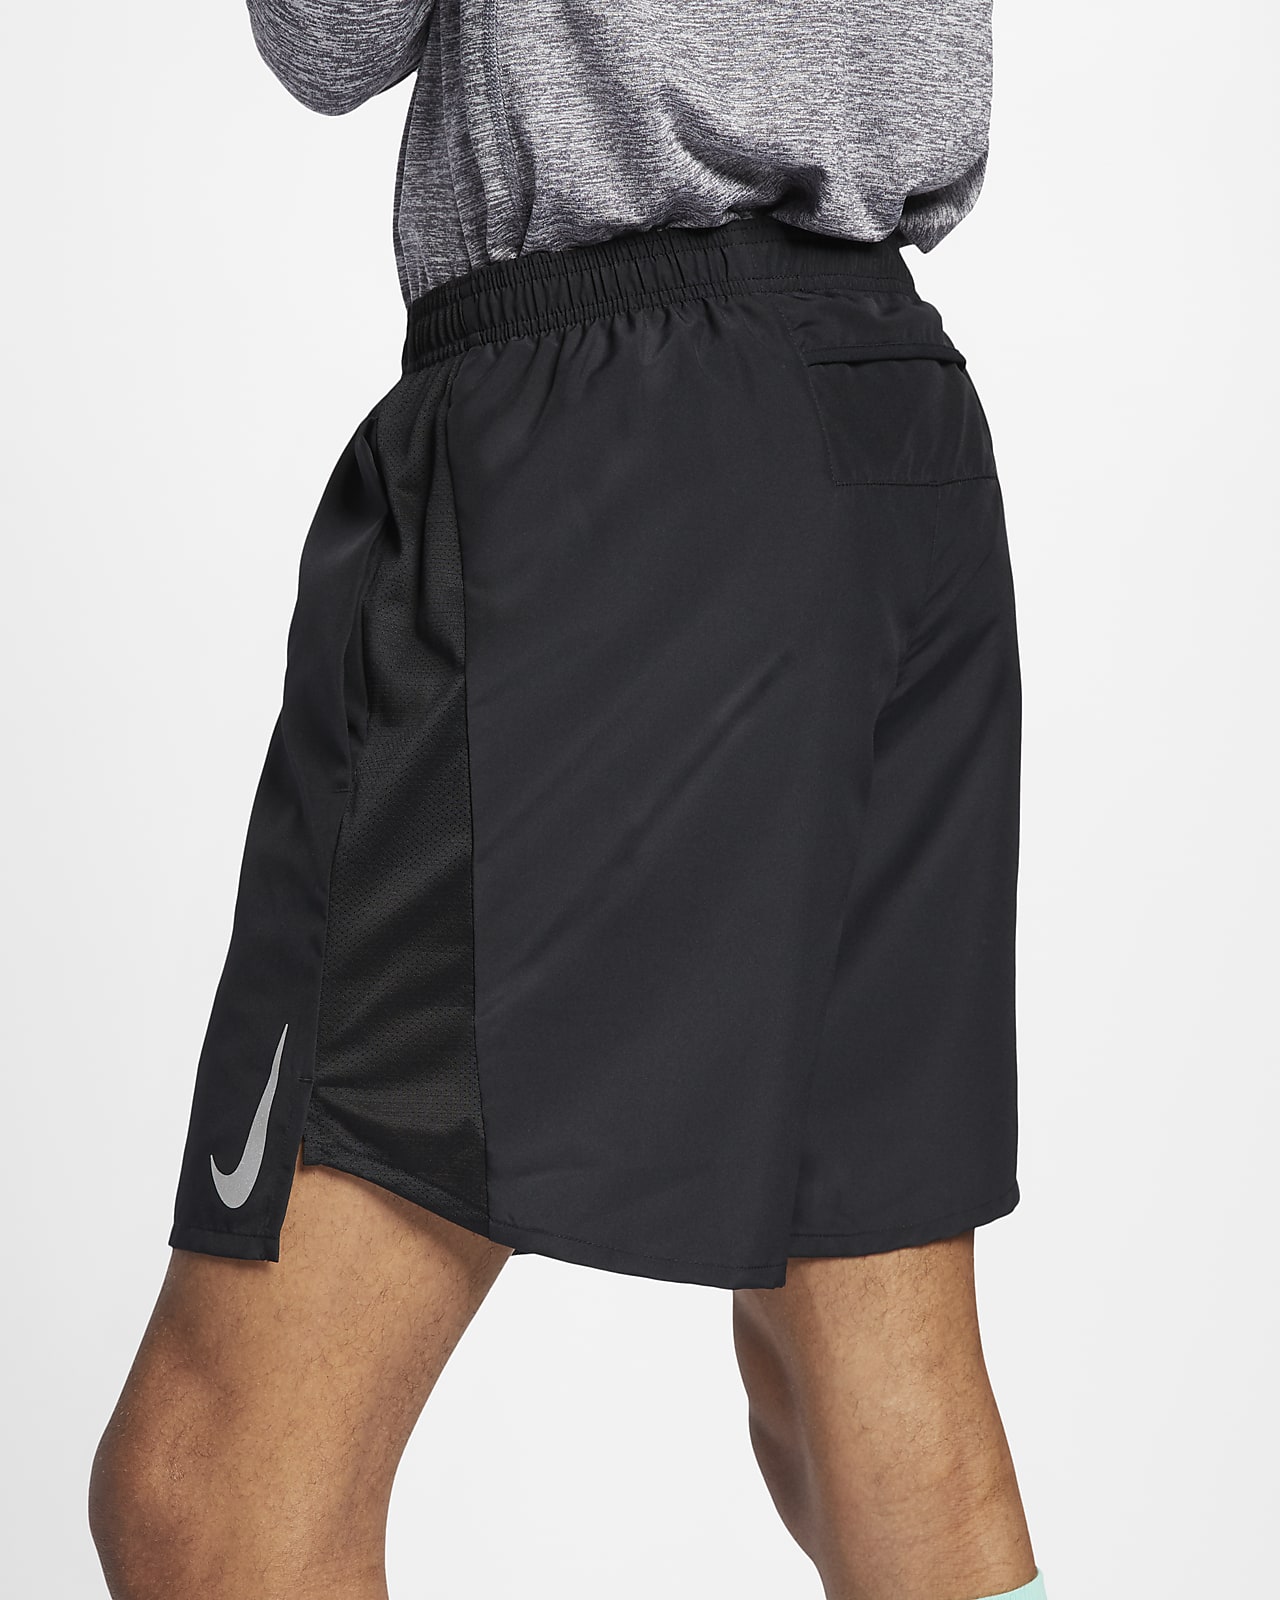 nike 6 inch running shorts